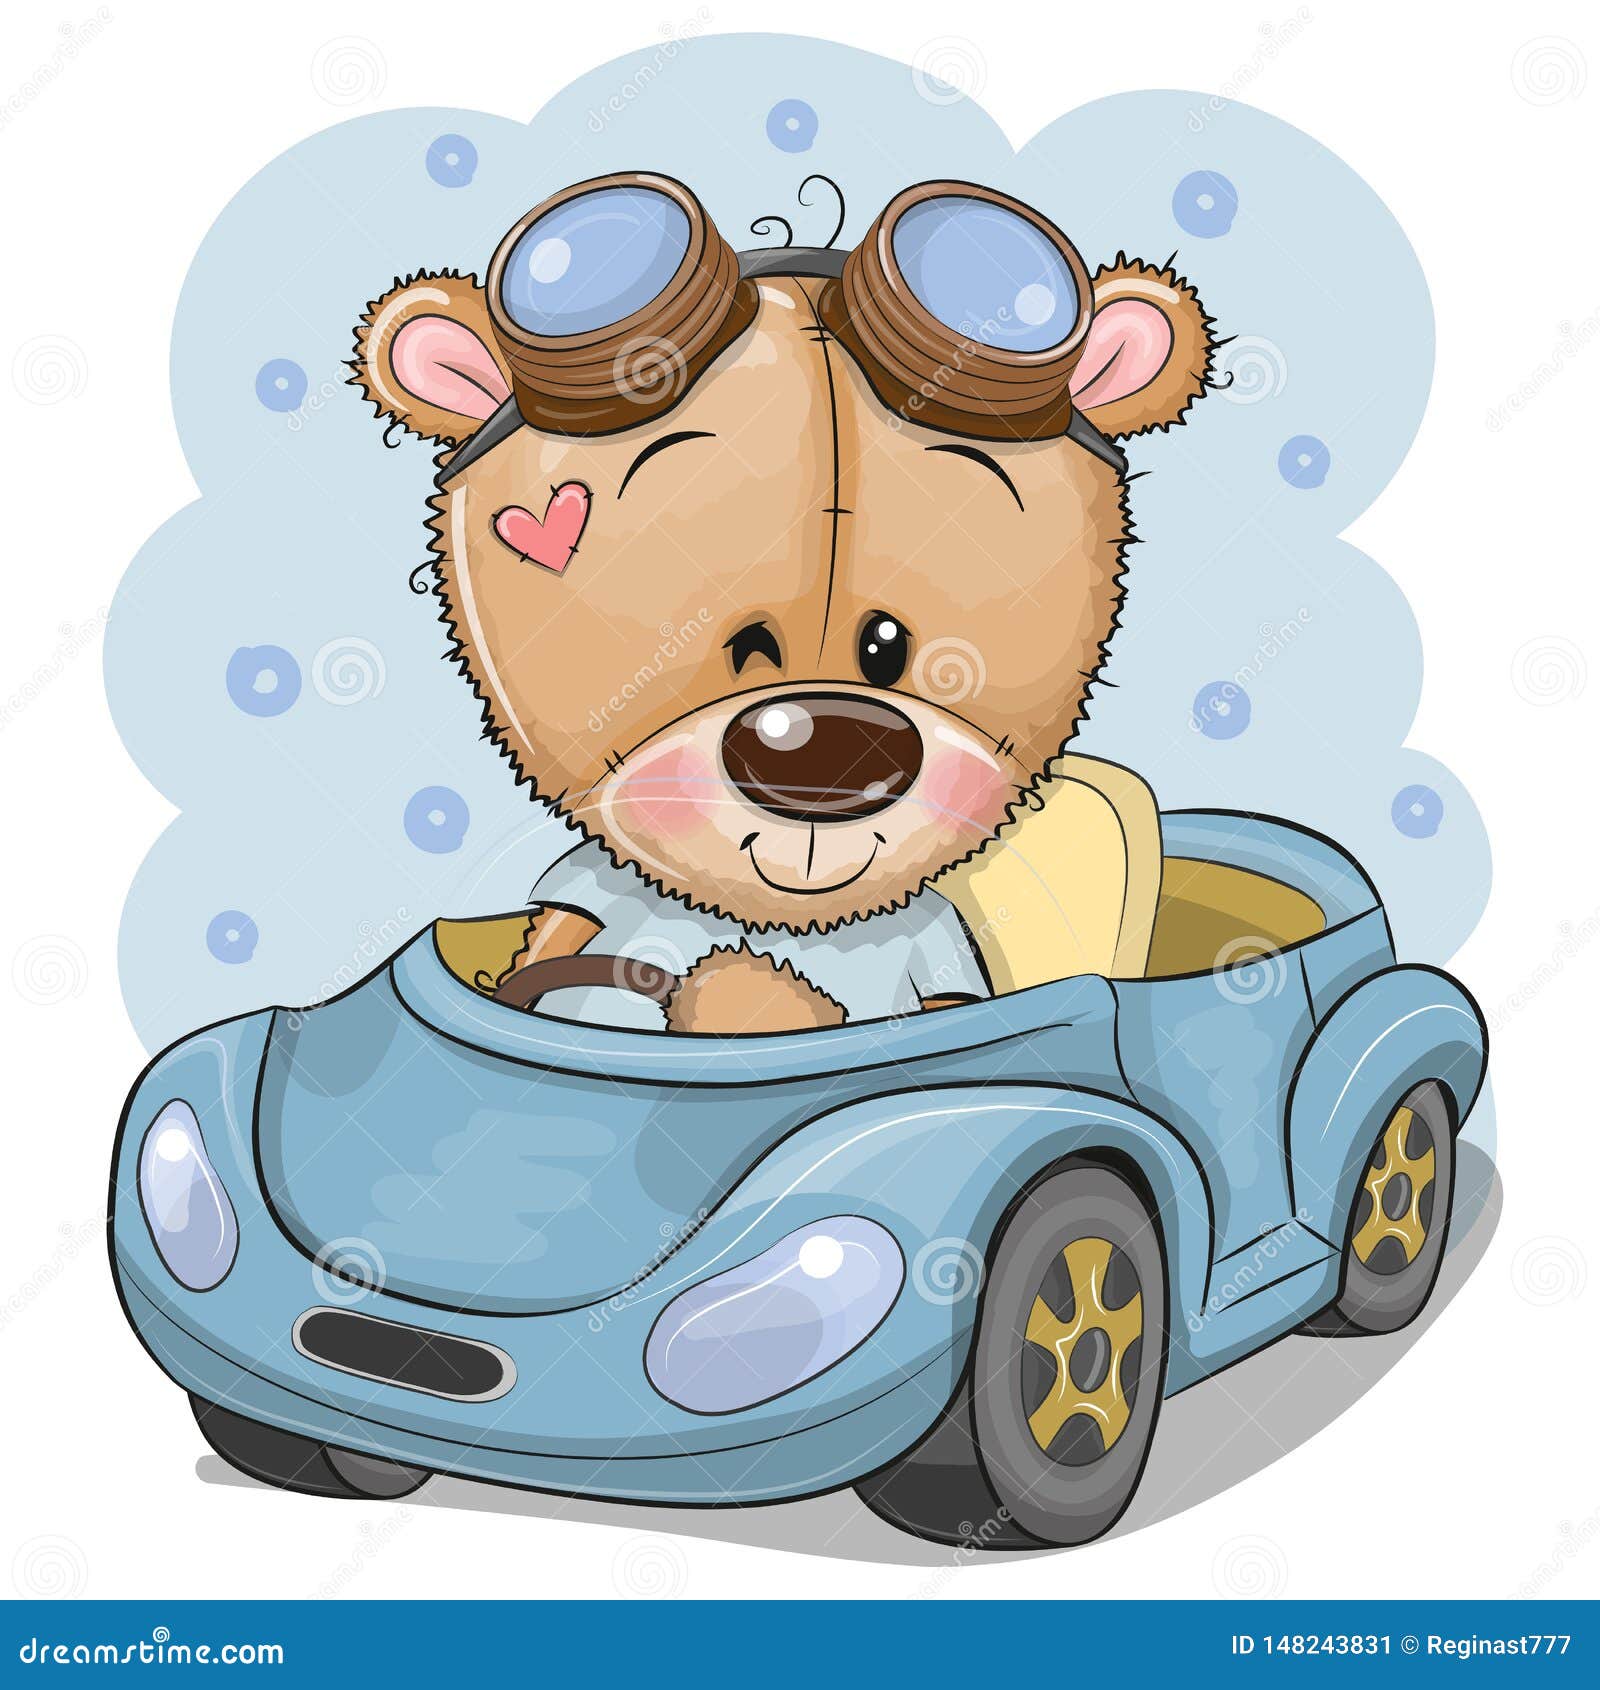 teddy bear car